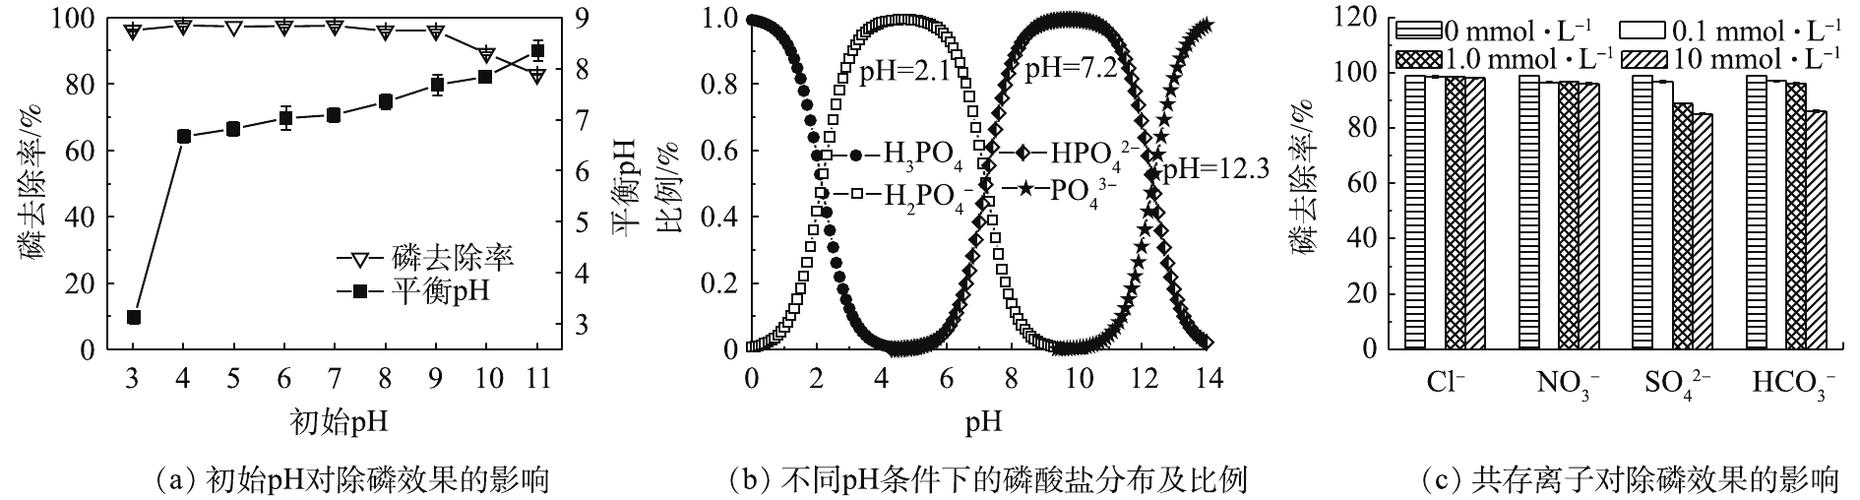 磷酸盐溶液的ph值 磷酸盐在不同ph下的存在形态